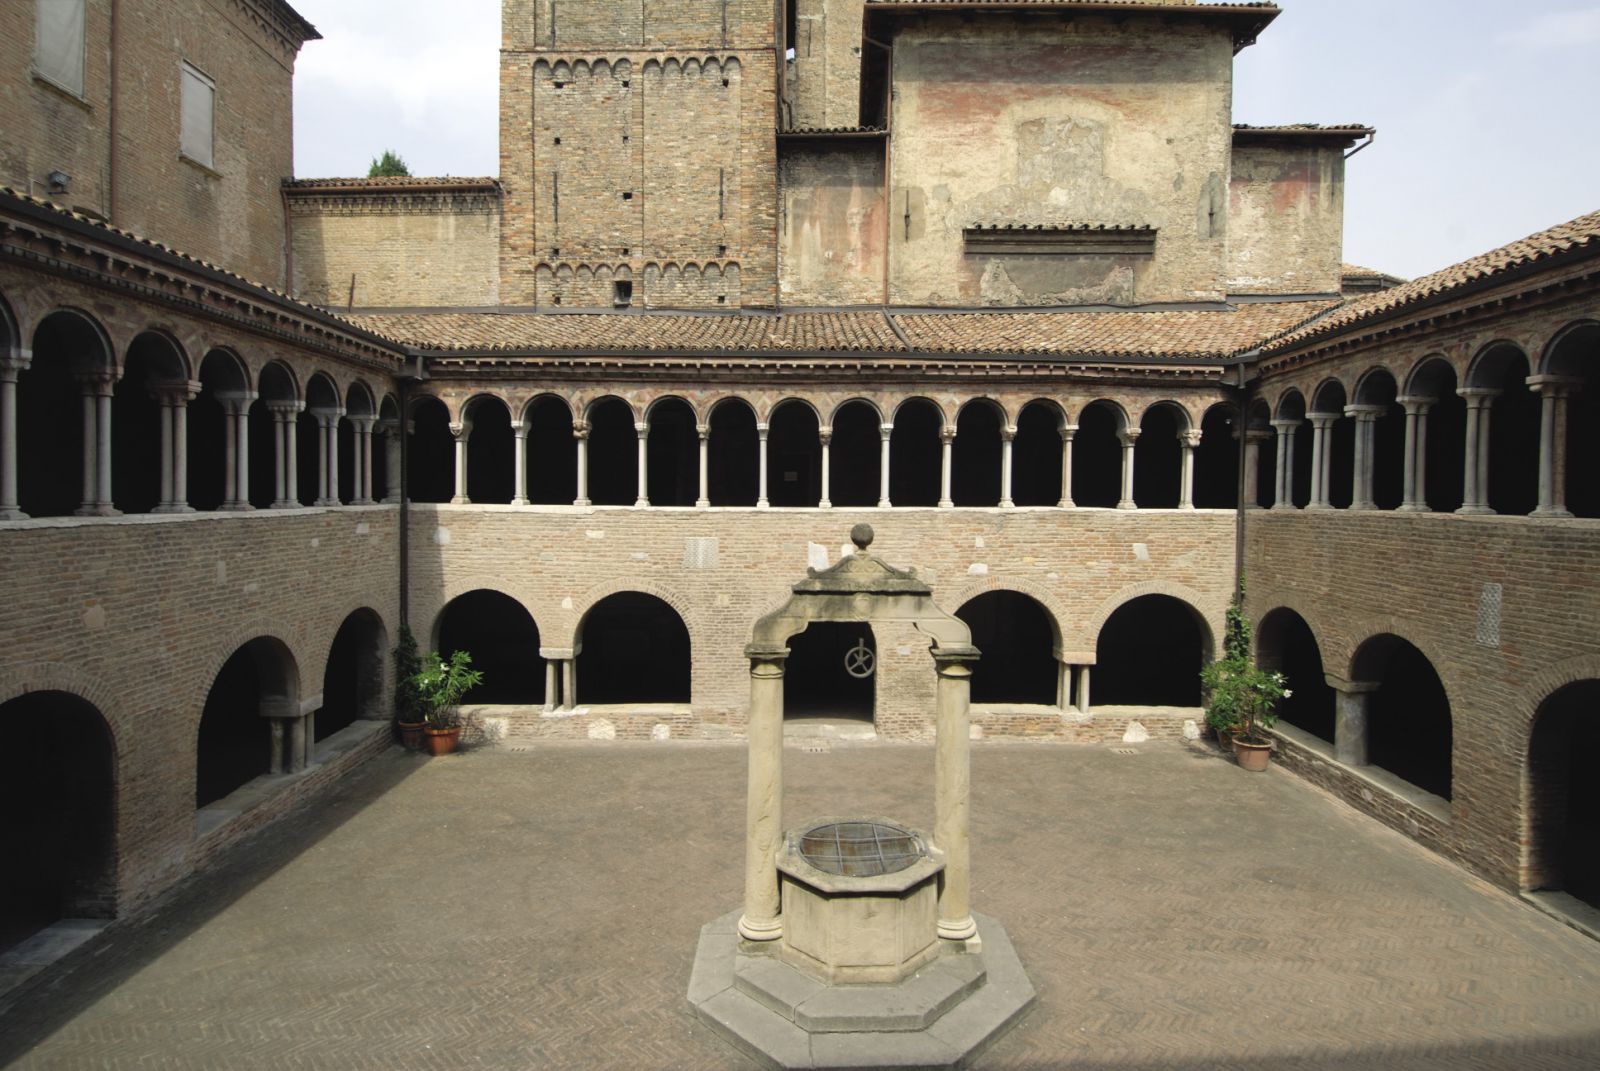 Cloister - Santo Stefano Basilicata, Bologna - picture by Gianpaolo Zaniboni